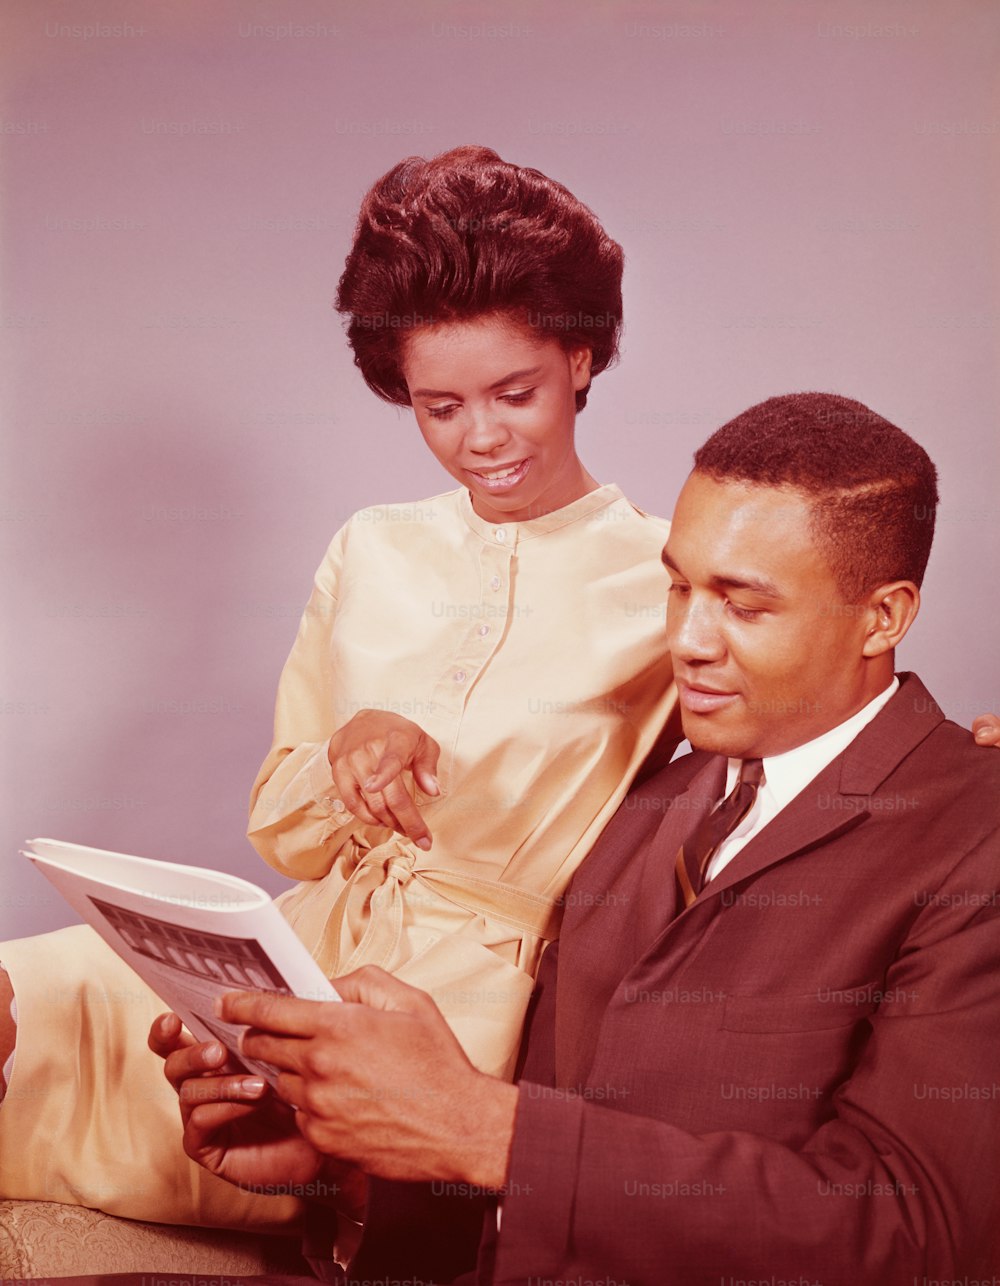 STATI UNITI - 1960 CIRCA: Coppia seduta sulla sedia, donna che indica l'articolo della rivista.